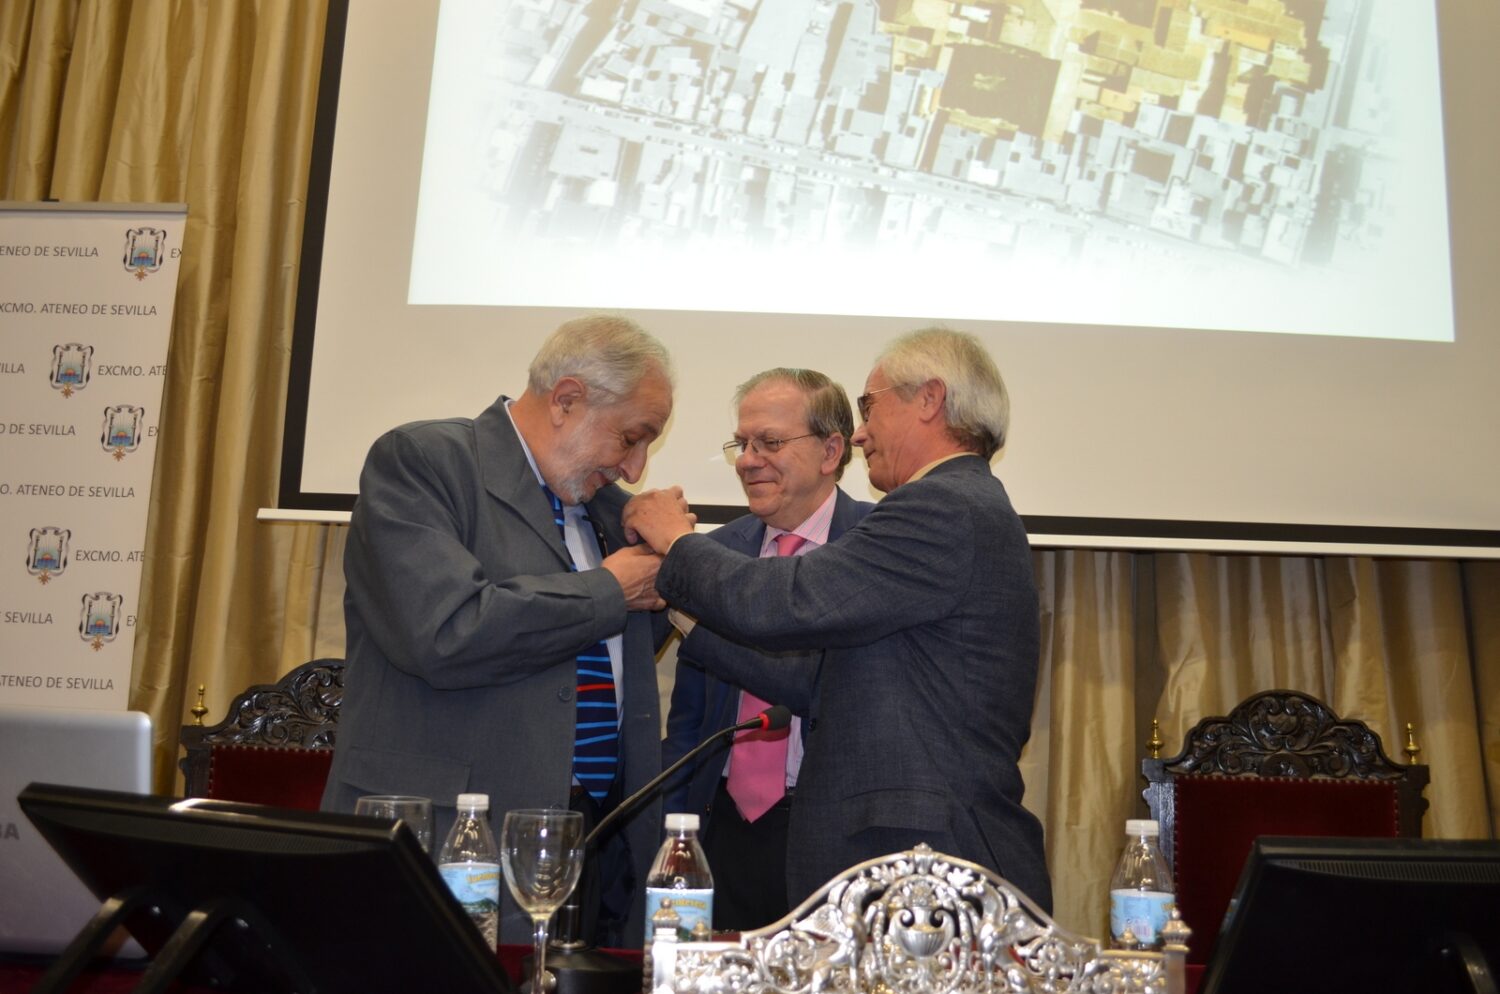 José Mª Cabeza impone el escudo del Ateneo al ponente, en presencia del Presidente, Alberto Máximo Pérez Calero